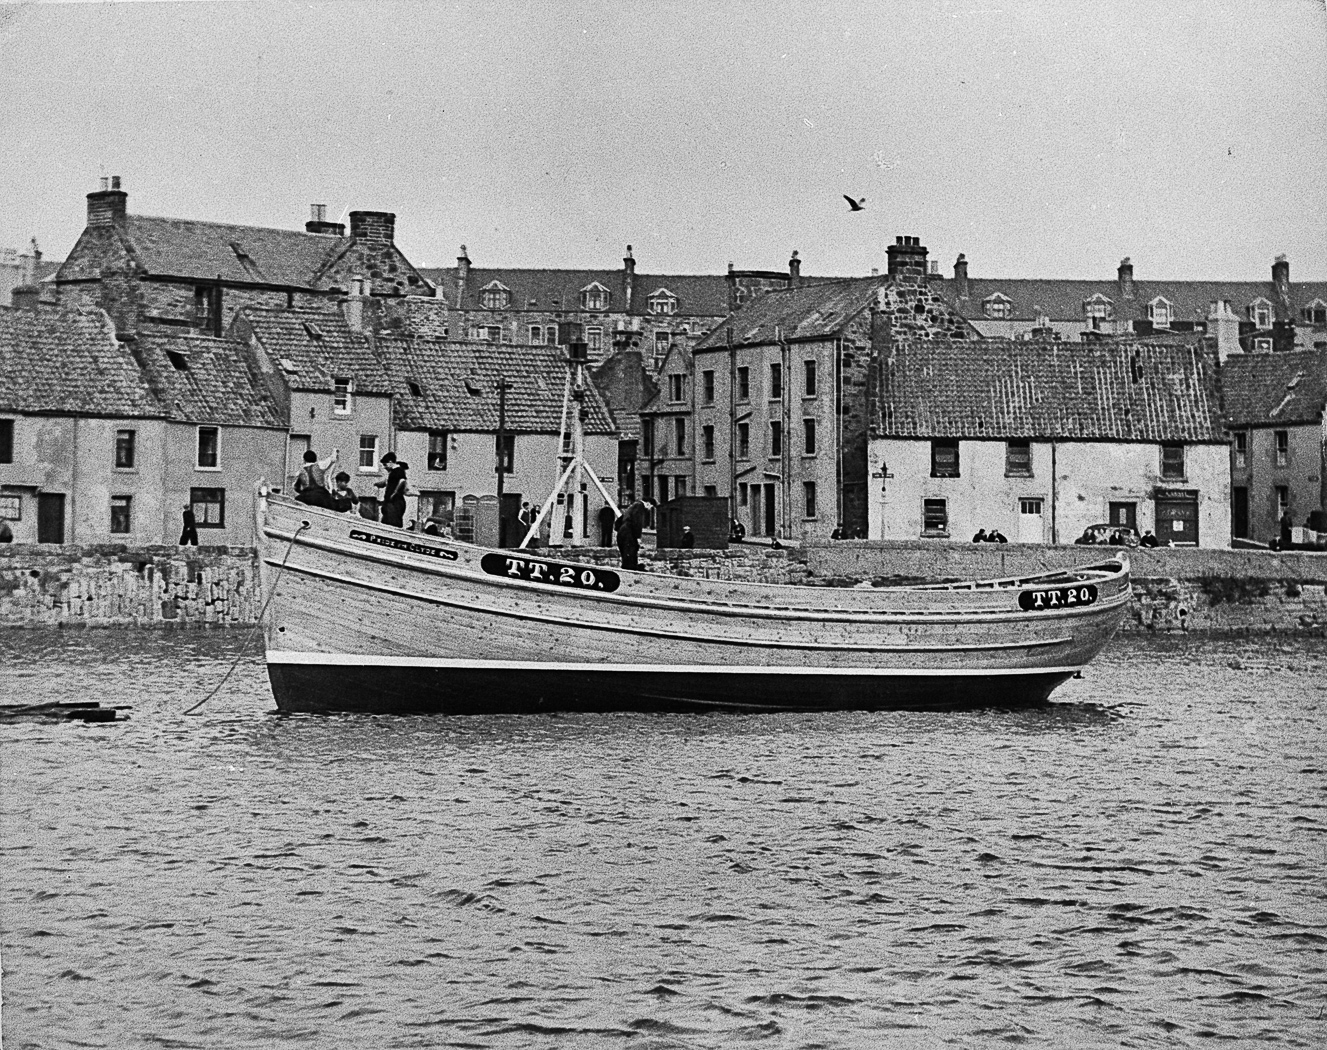 Ringnetter 'Pride of the Clyde', TT20, in harbour, St Monans, 1949.